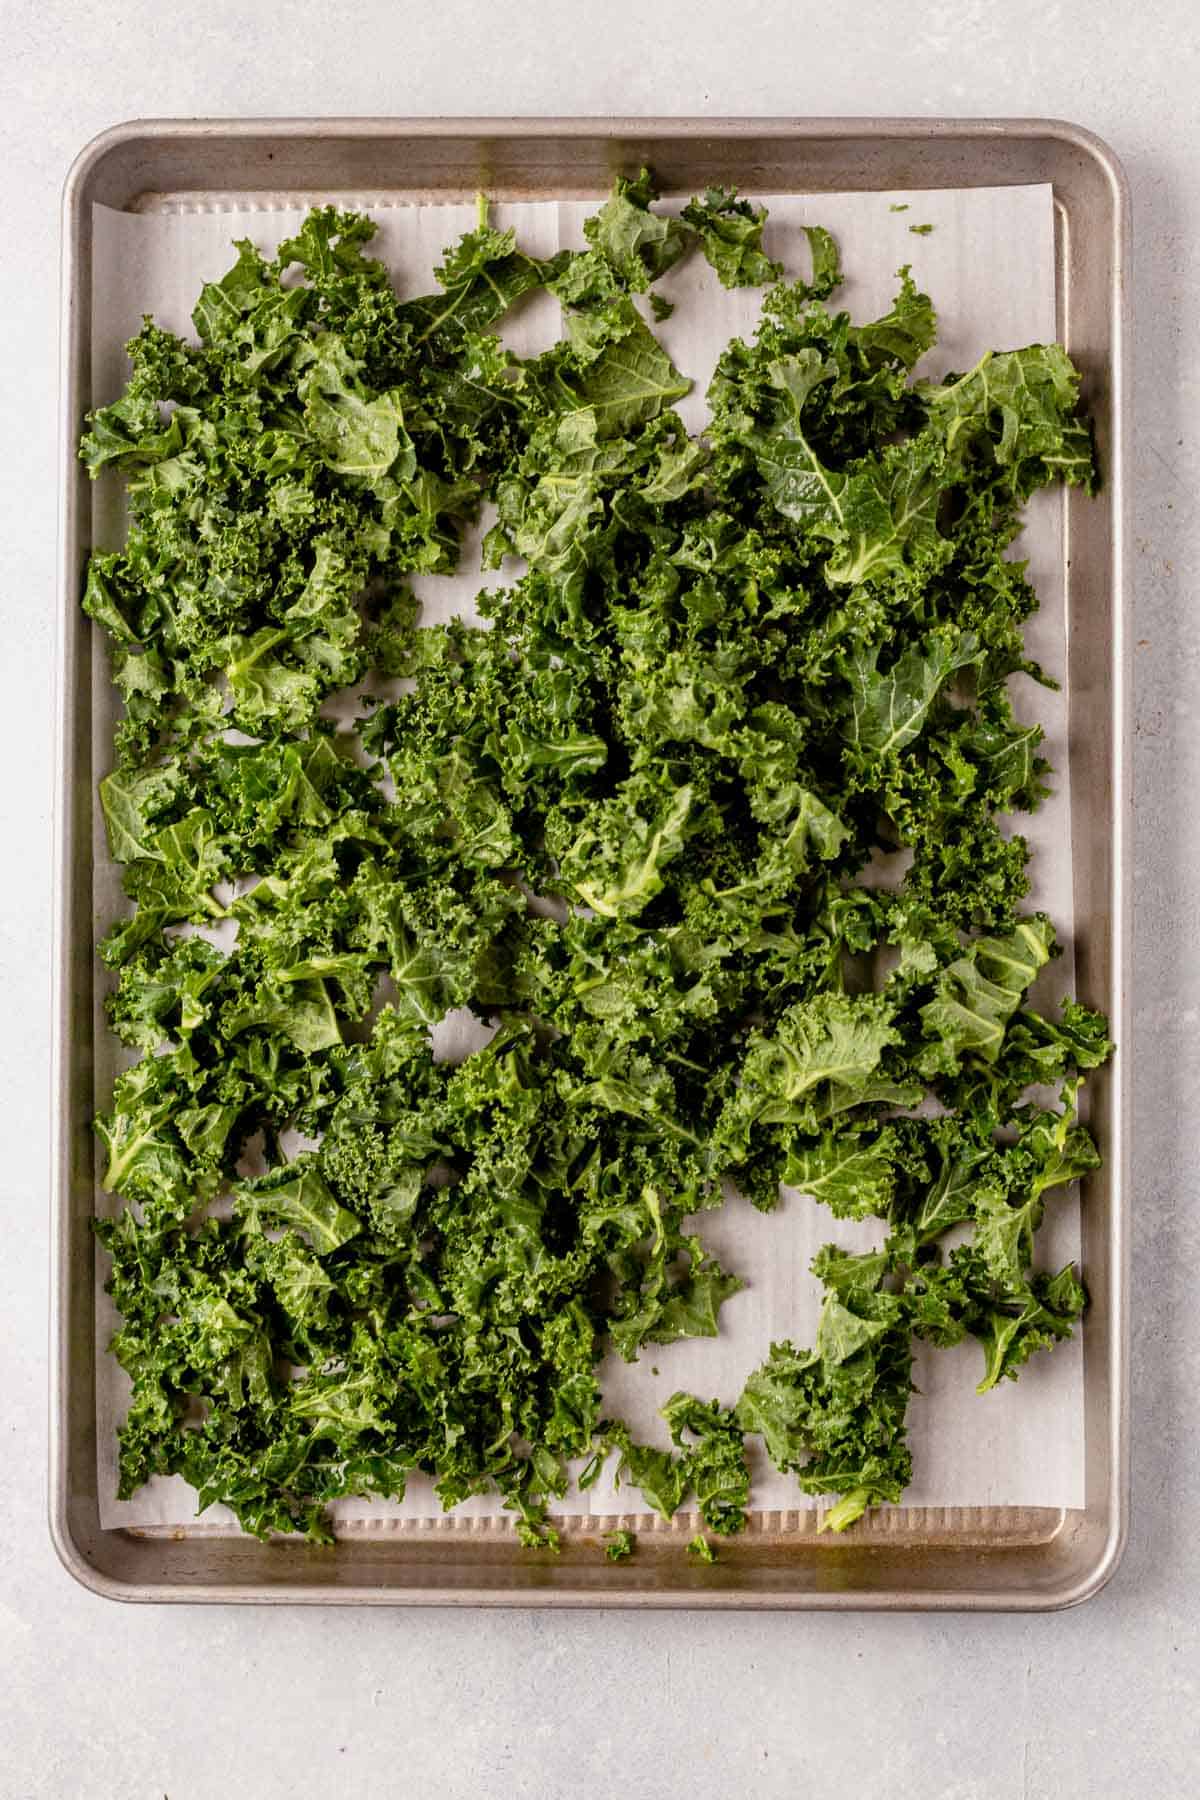 raw frozen kale on a baking sheet